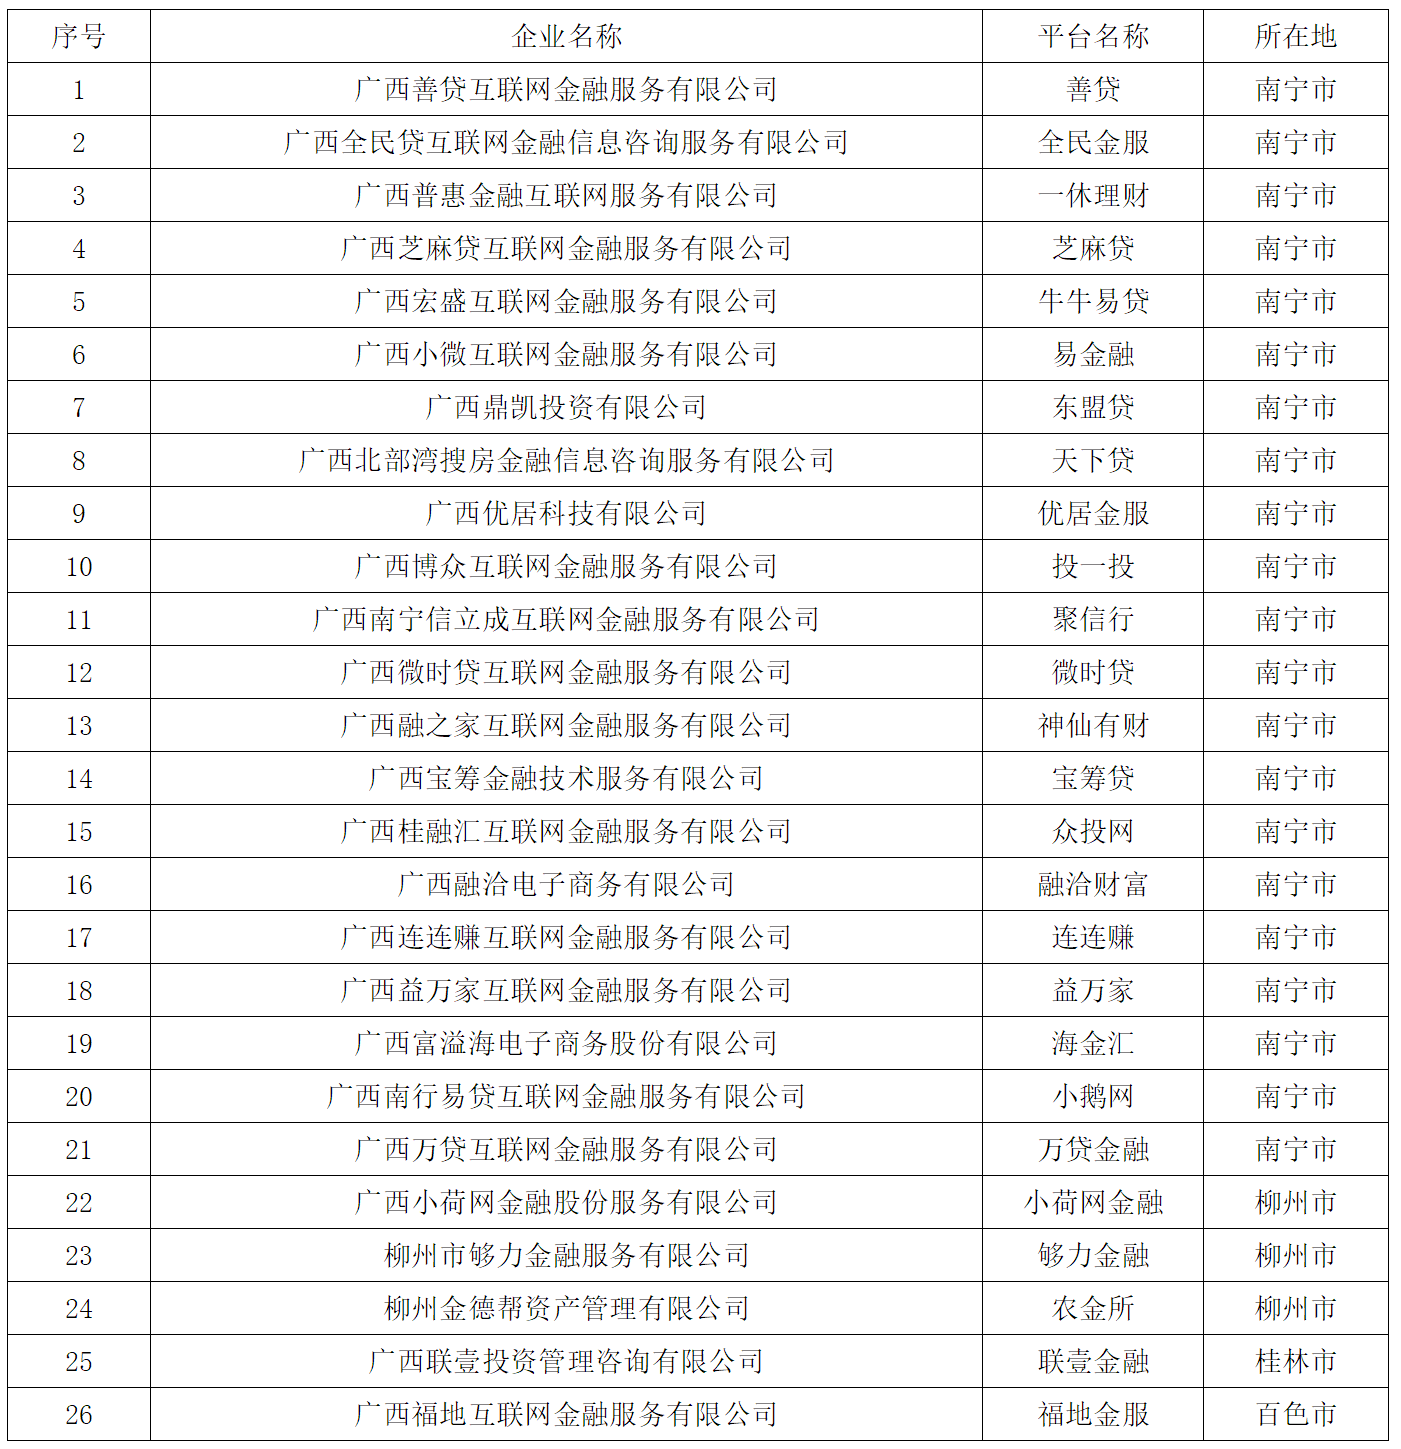 广西公布26家P2P机构清退名单，天下贷、芝麻贷、众投网在列